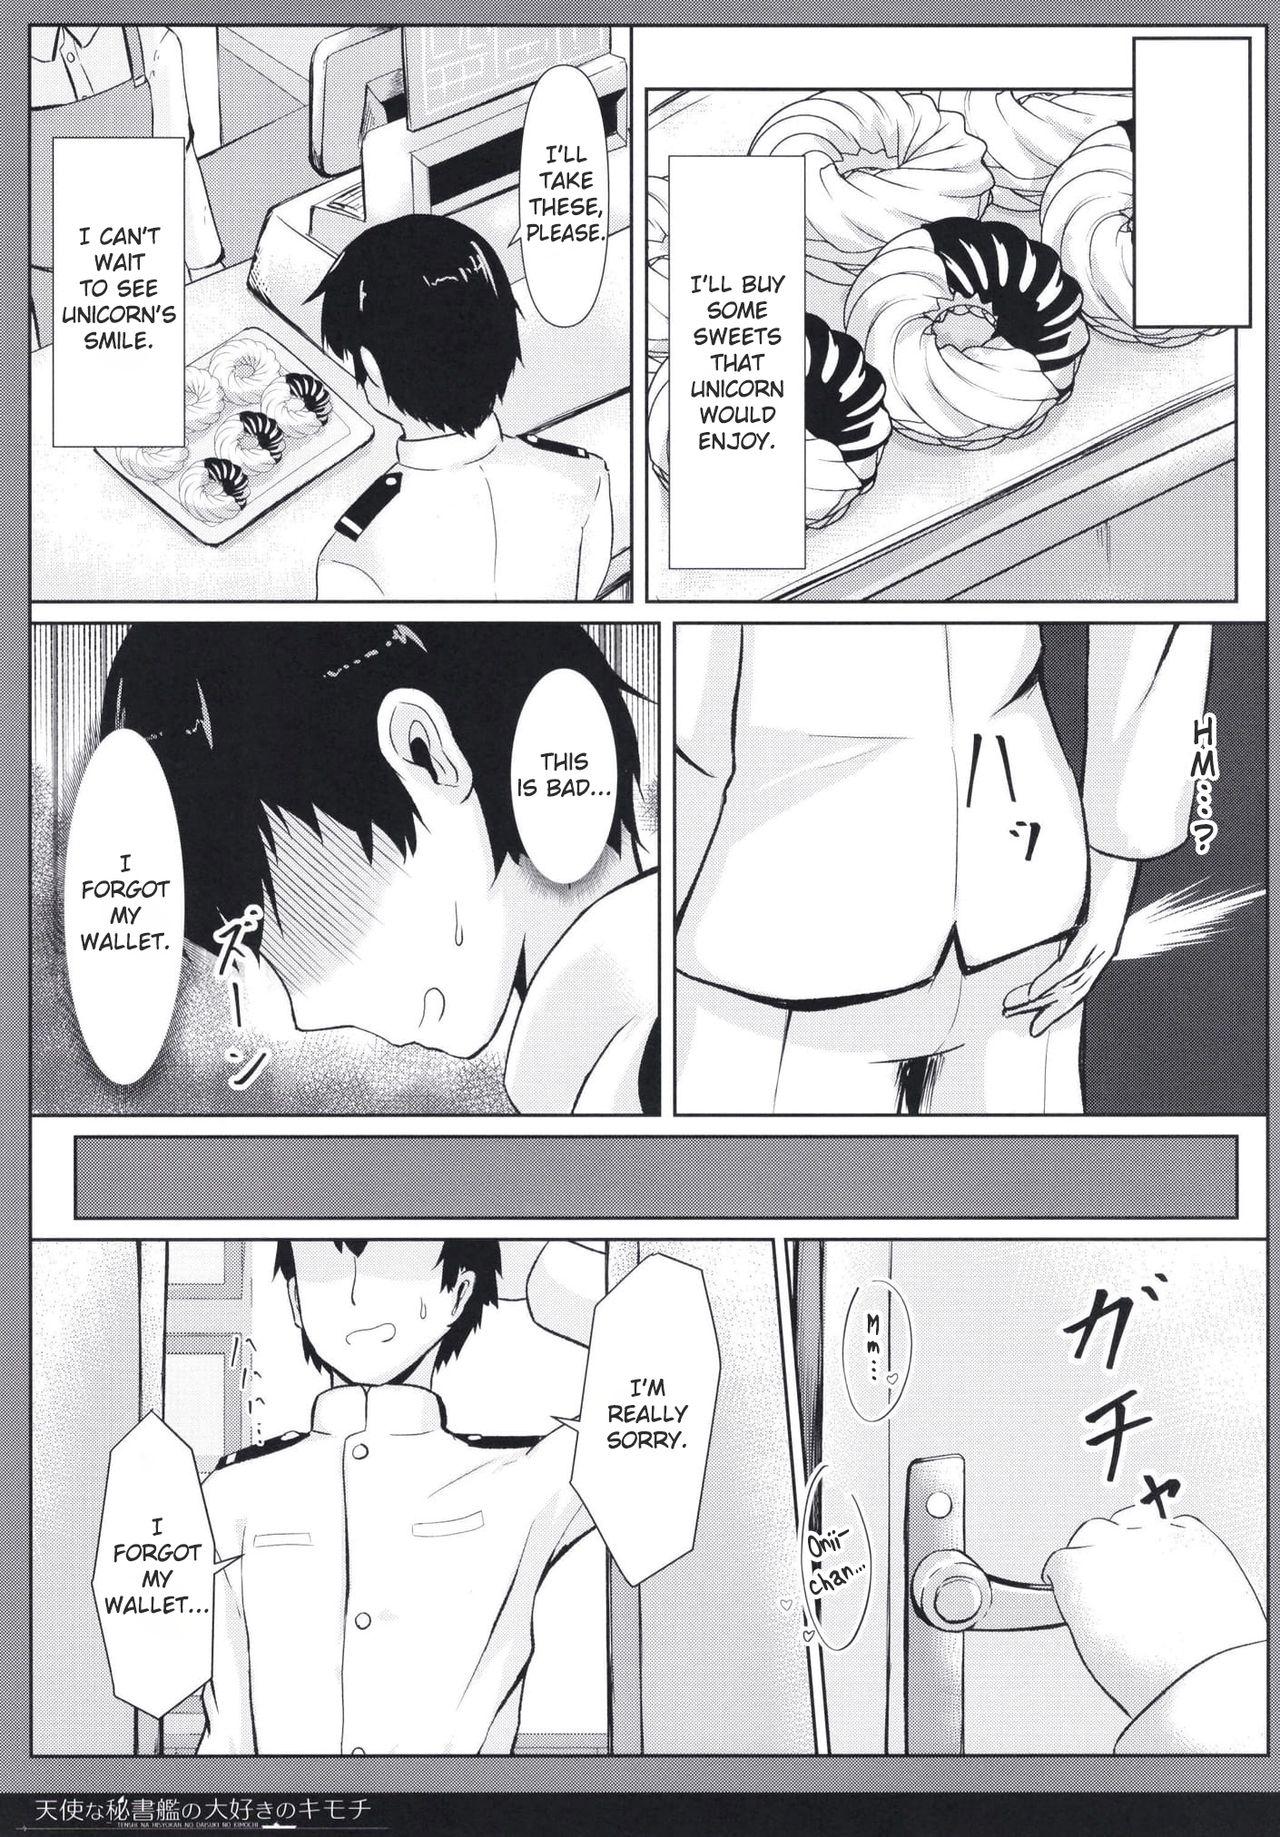 Sluts Tenshi na Hisyokan no Daisuki no Kimochi - Azur lane Tinder - Page 7